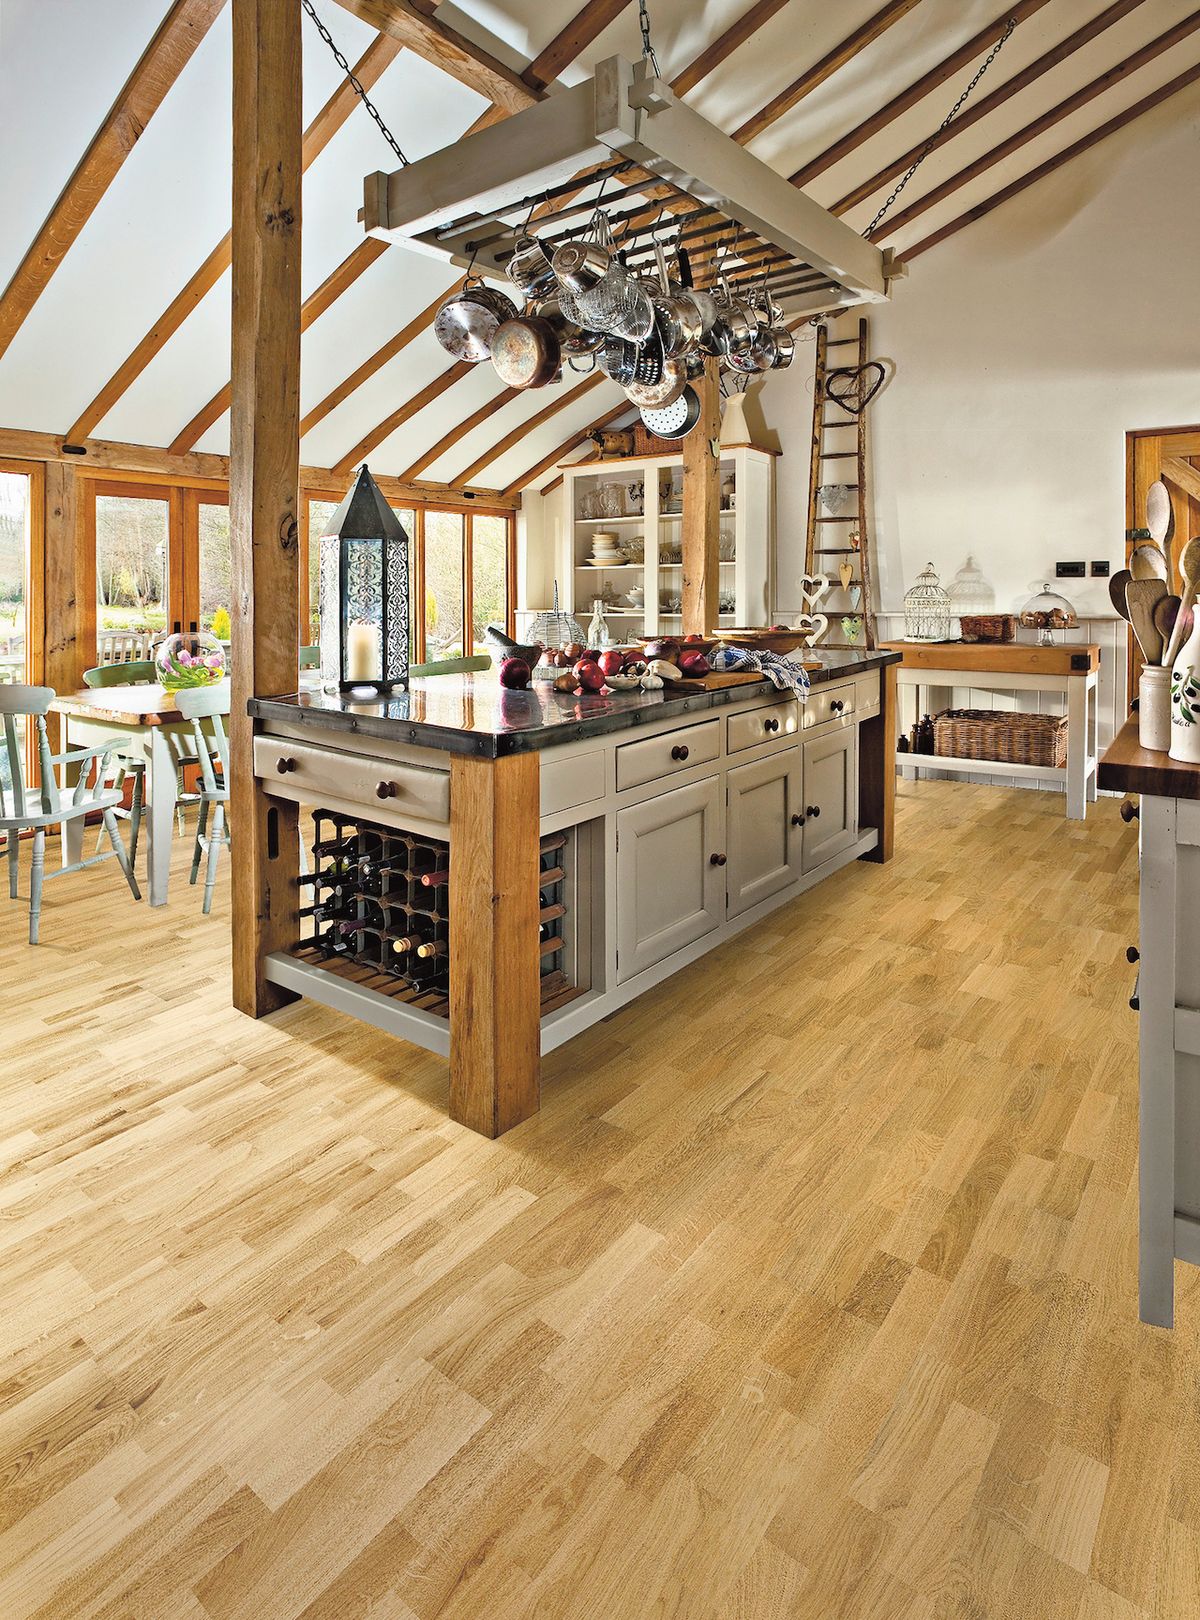 Dřevěná dubová podlaha může být klidně i v kuchyni. Tvrdé dřevo náročnější provoz zvládne.